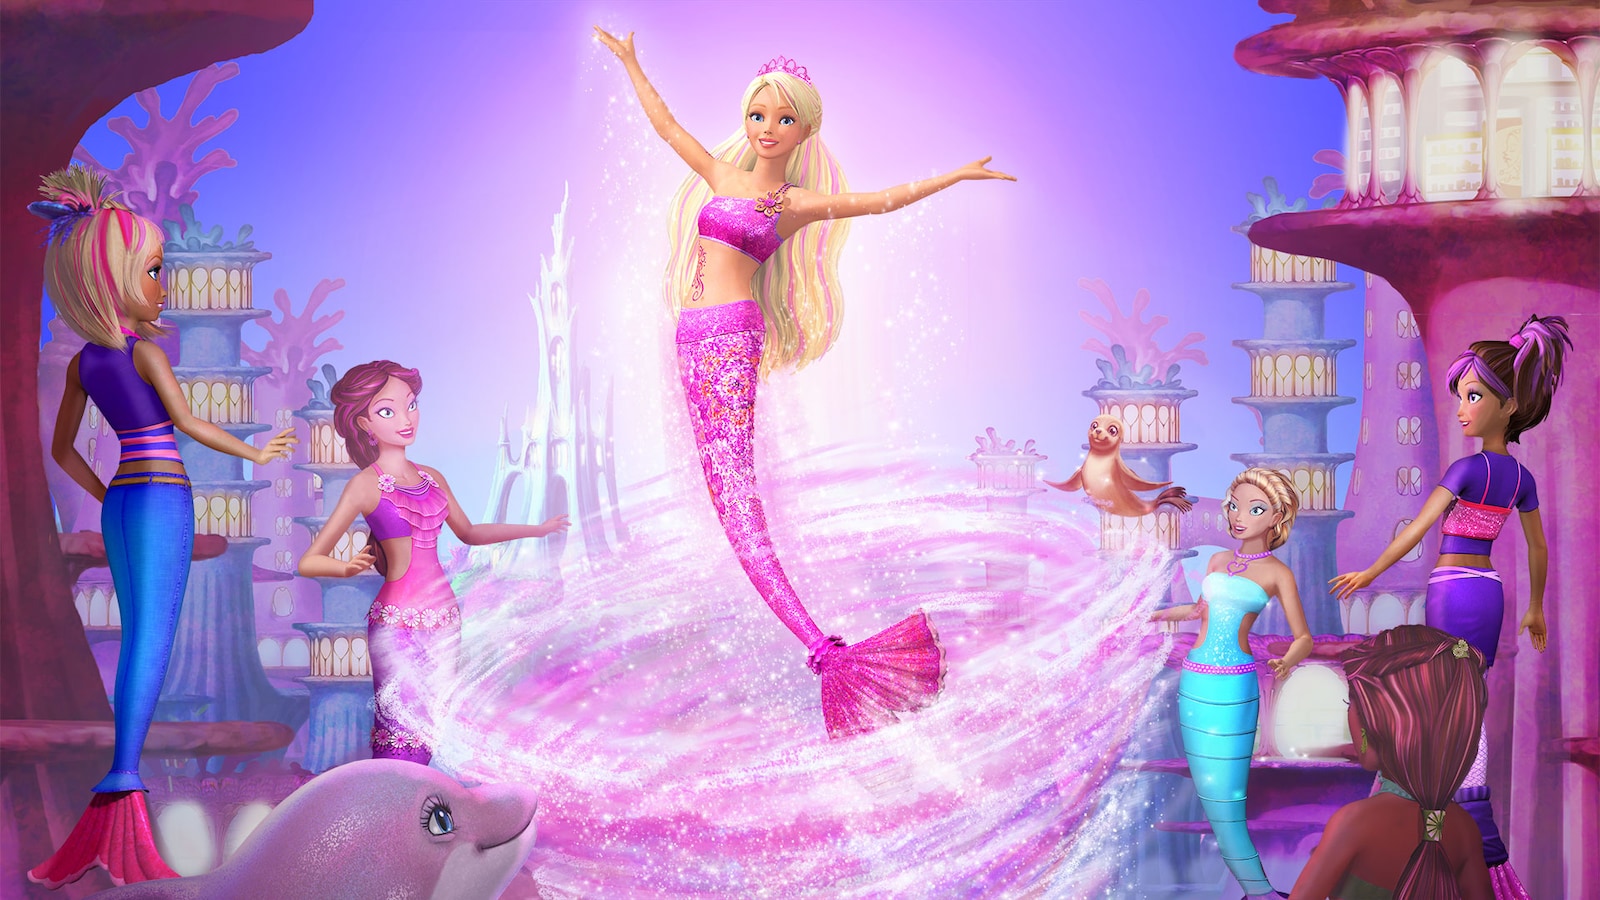 patois Afstemning Kyst Se Barbie i et havfrueeventyr online - Viaplay